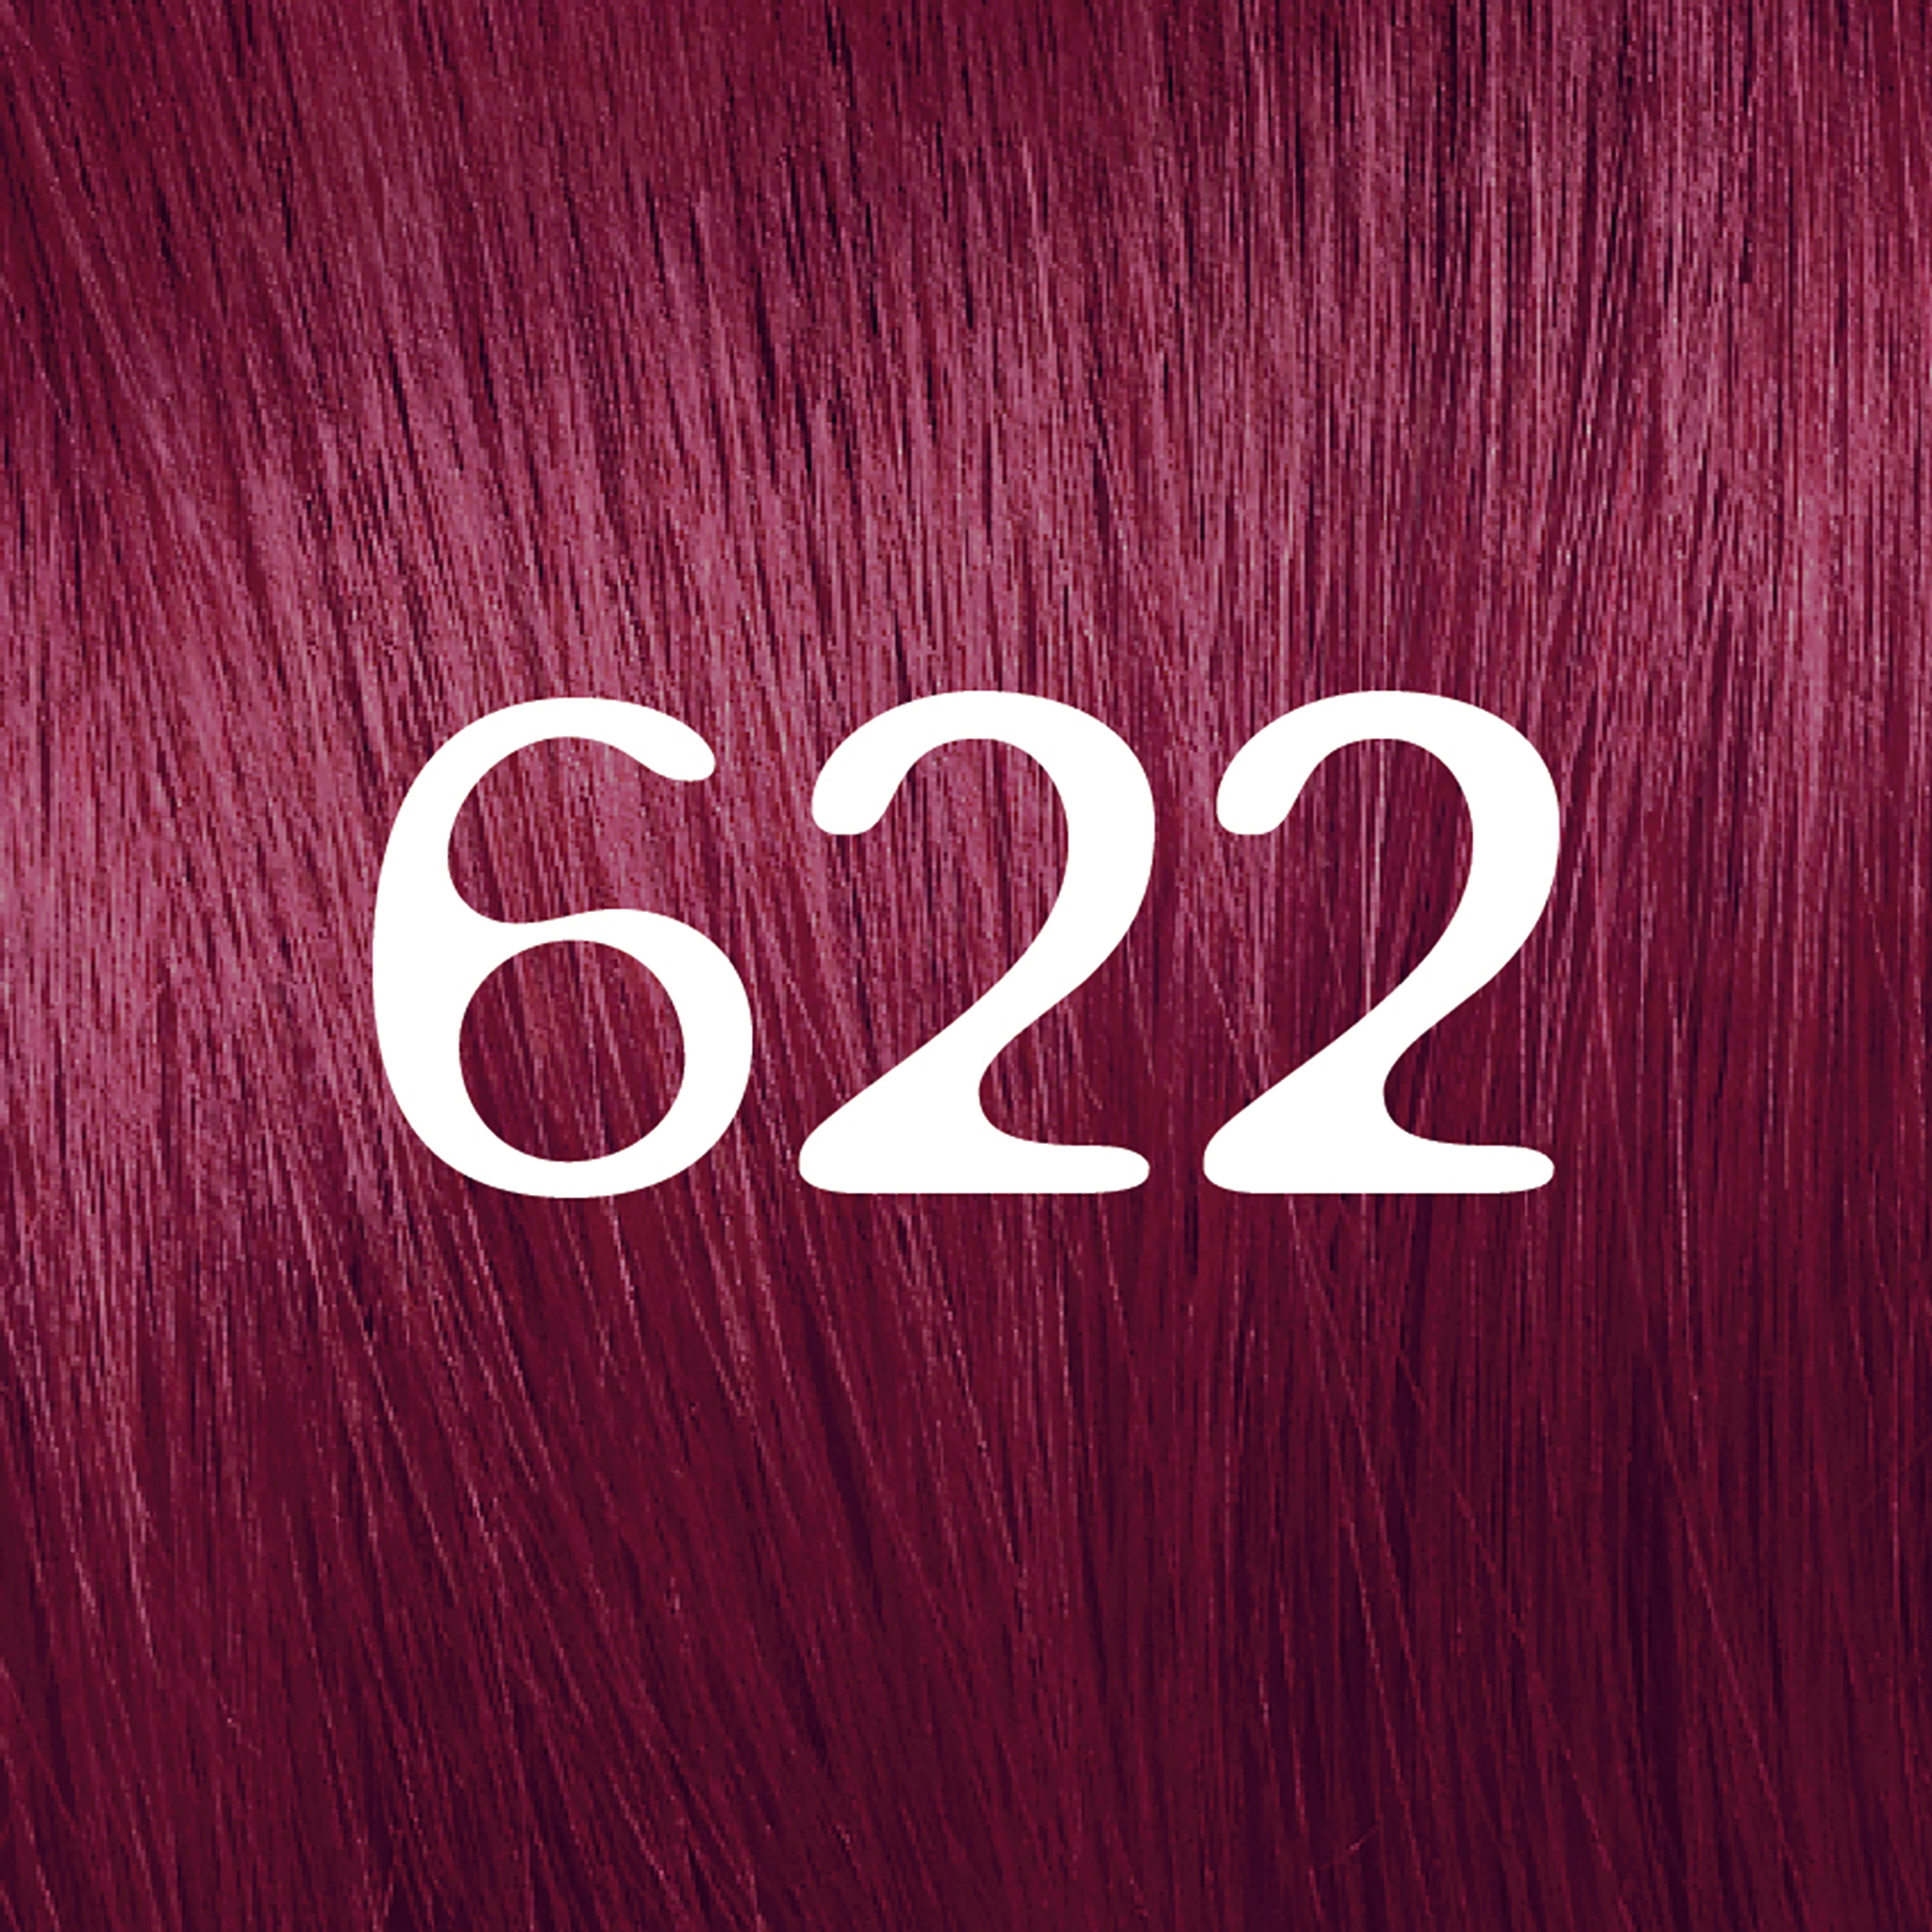 L'Oreal Paris Feria Permanent Hair Color, 62 Fuchsia - image 3 of 9